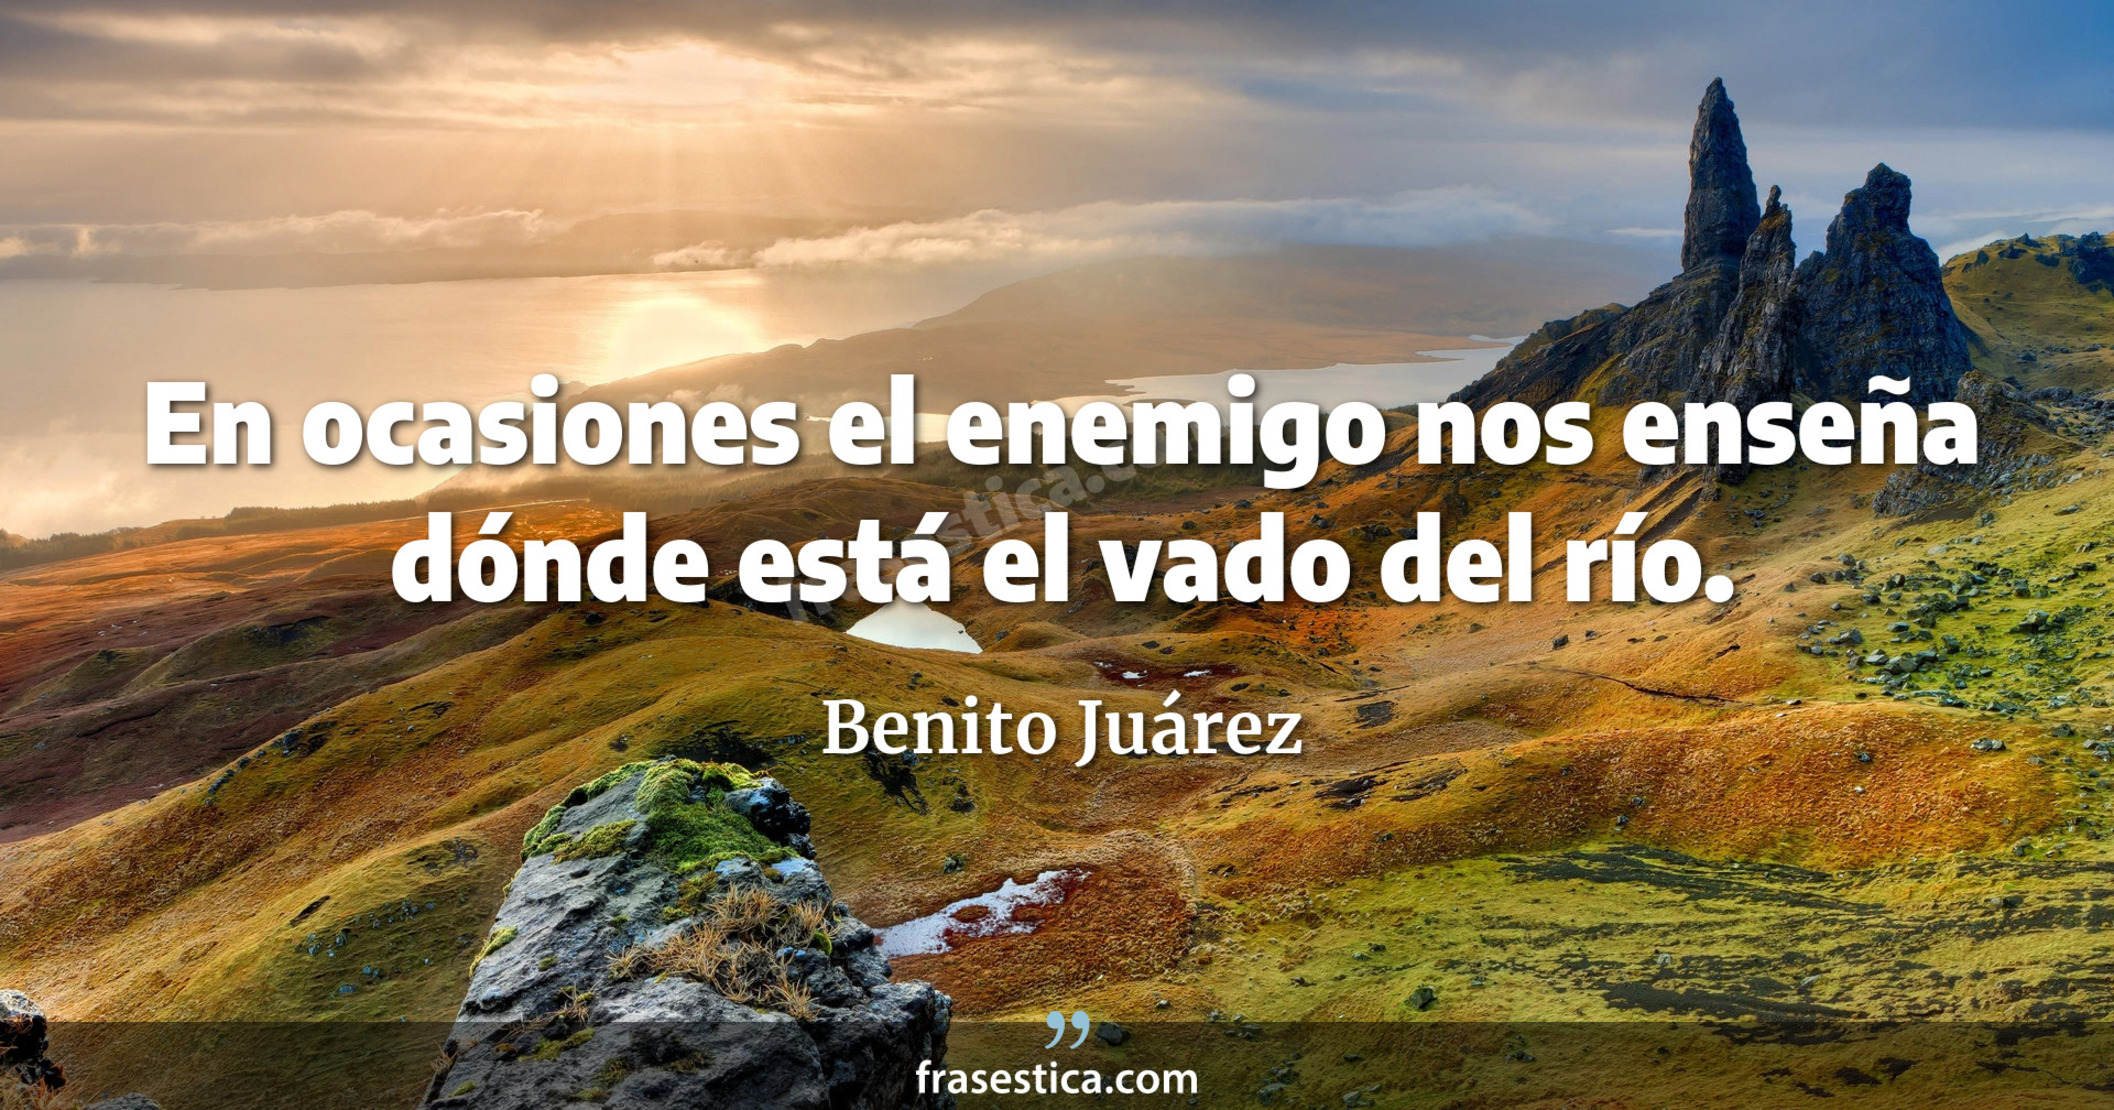 En ocasiones el enemigo nos enseña dónde está el vado del río. - Benito Juárez